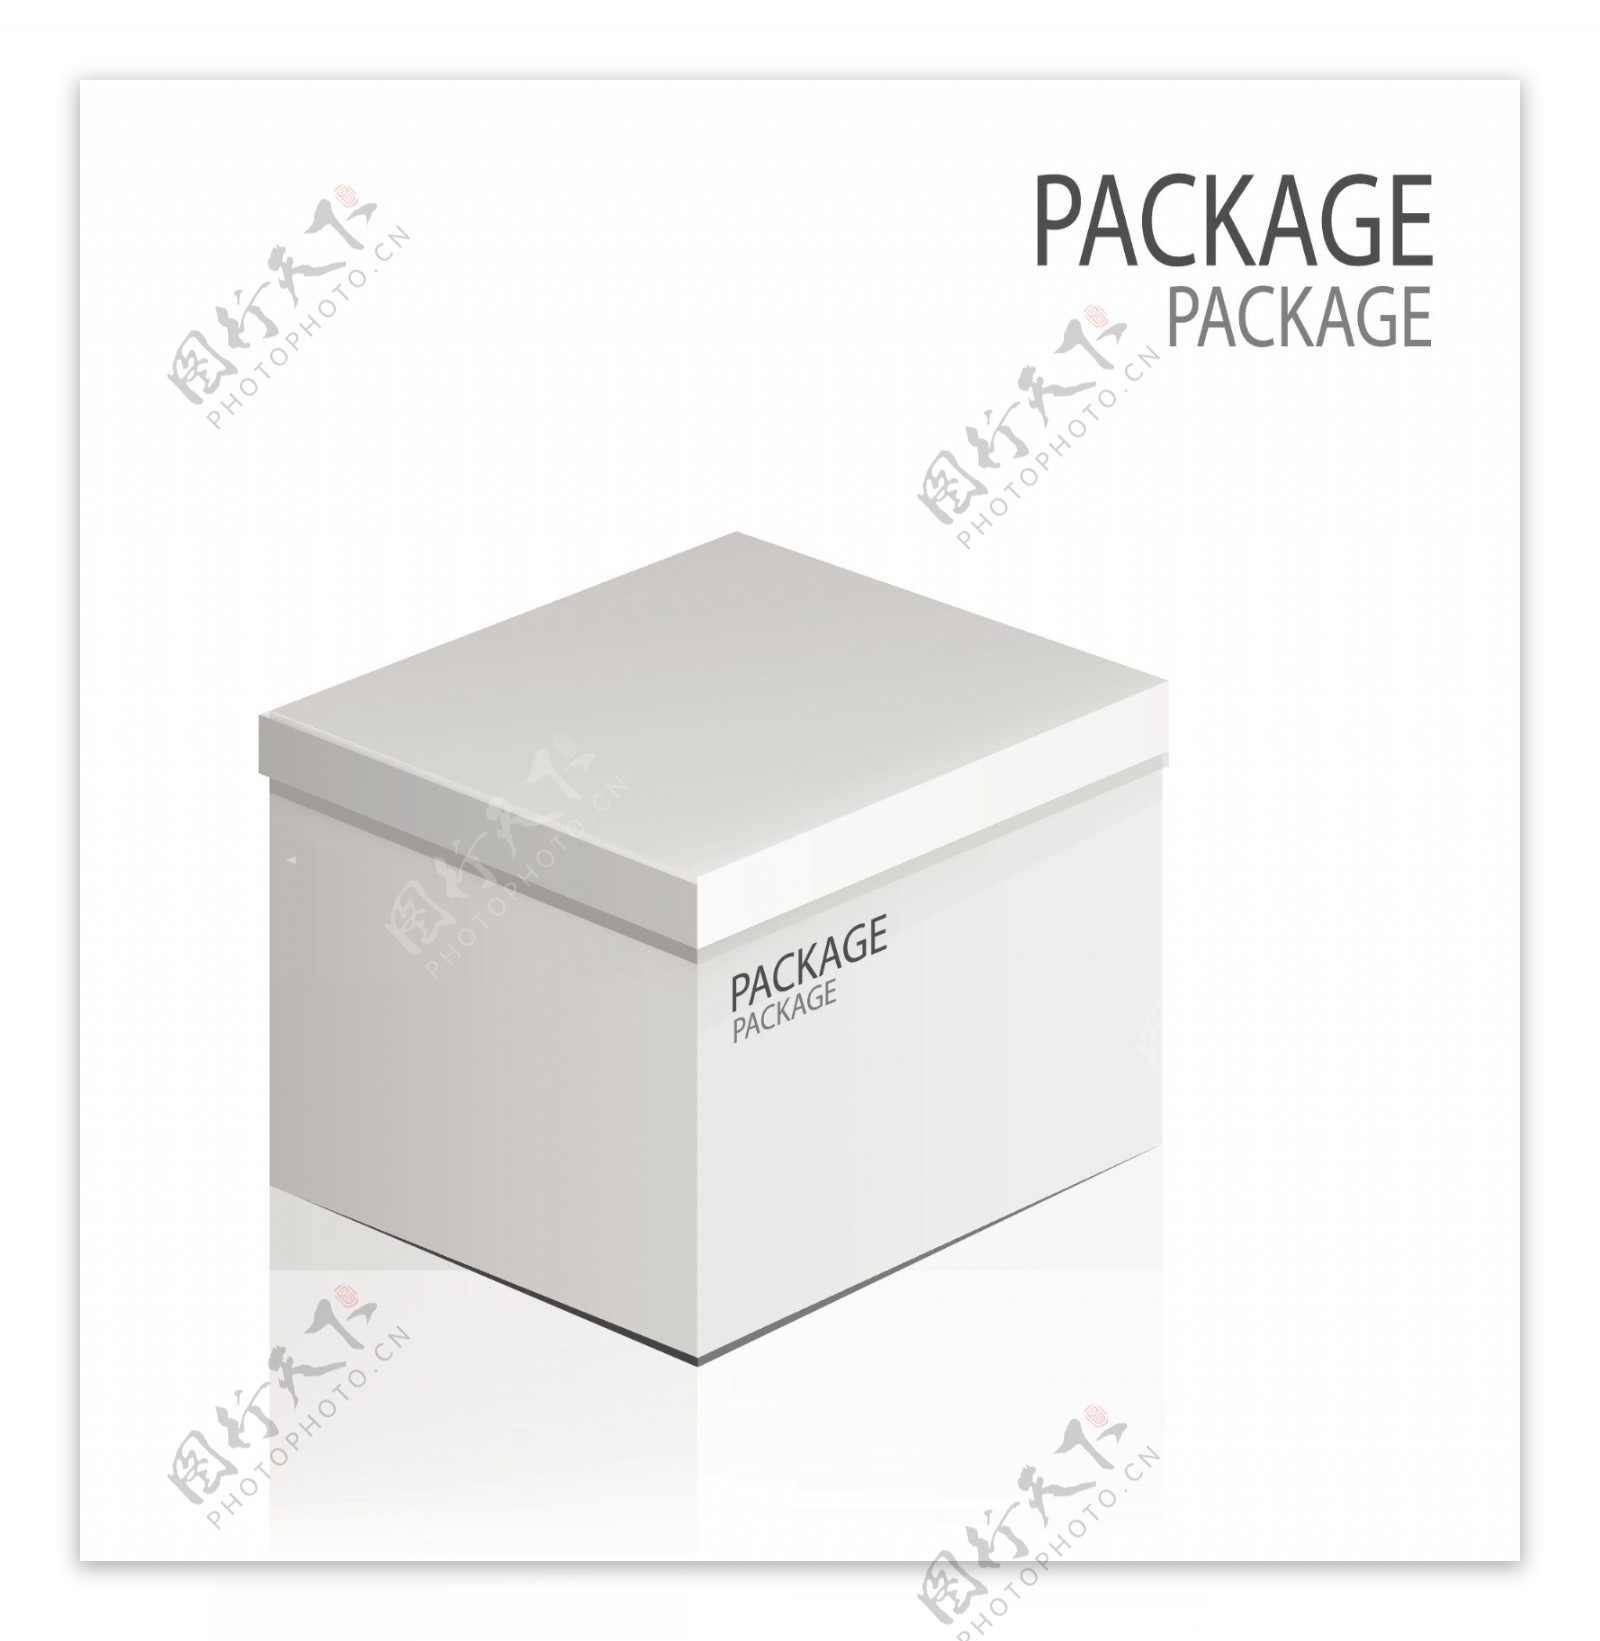 灰色包装盒设计素材